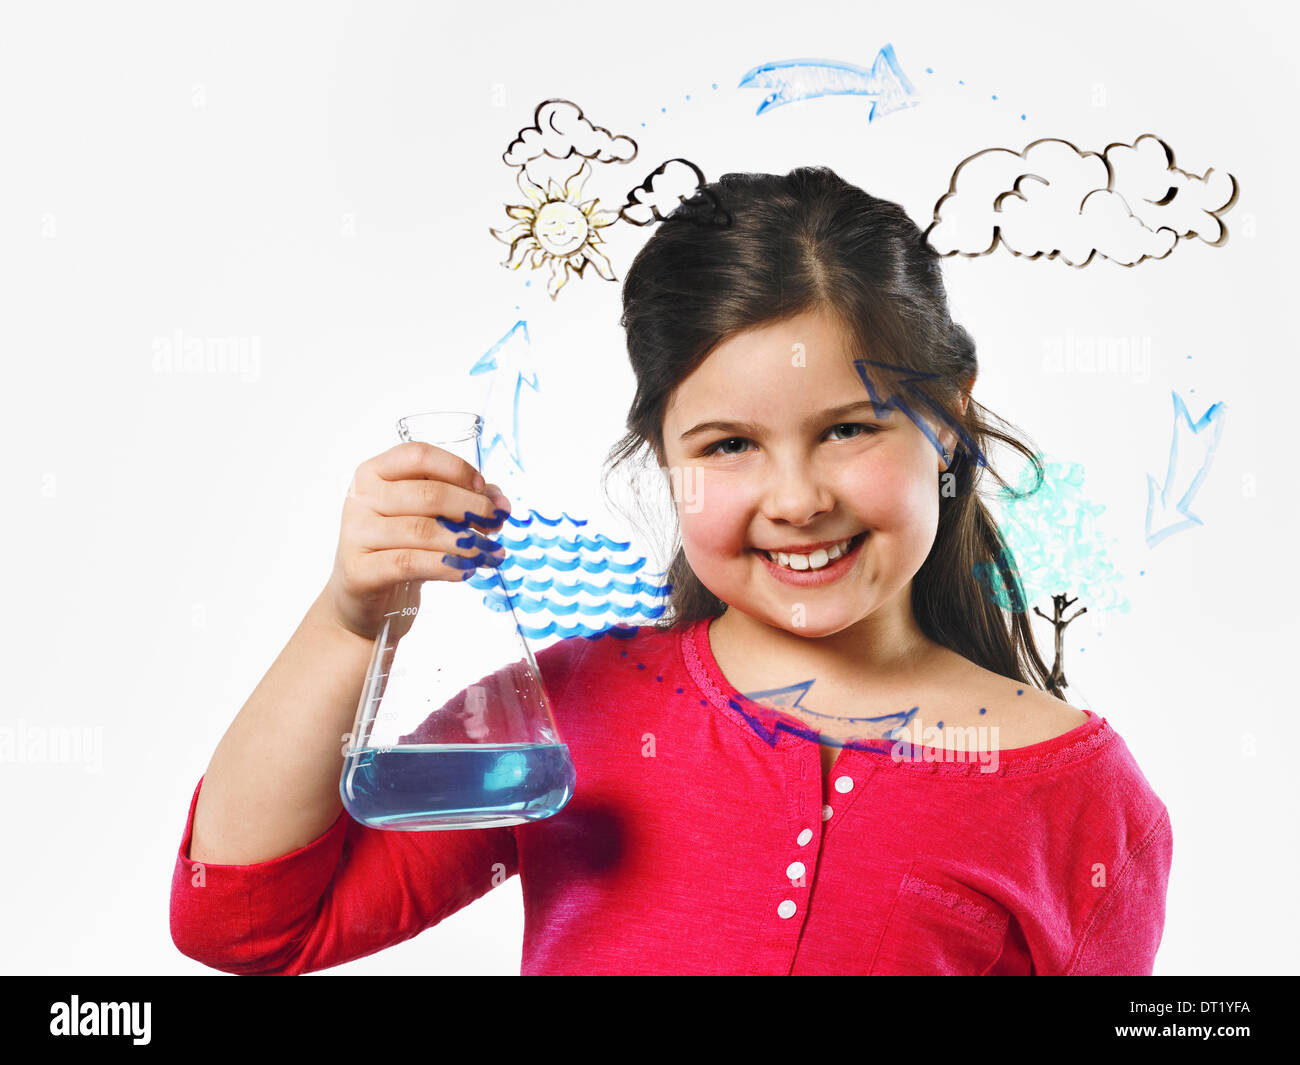 Ein junges Mädchen mit einem konischen Kolben blaue Flüssigkeit vor Verdunstung Zyklus zur Veranschaulichung auf eine klare Oberfläche gezeichnet Stockfoto